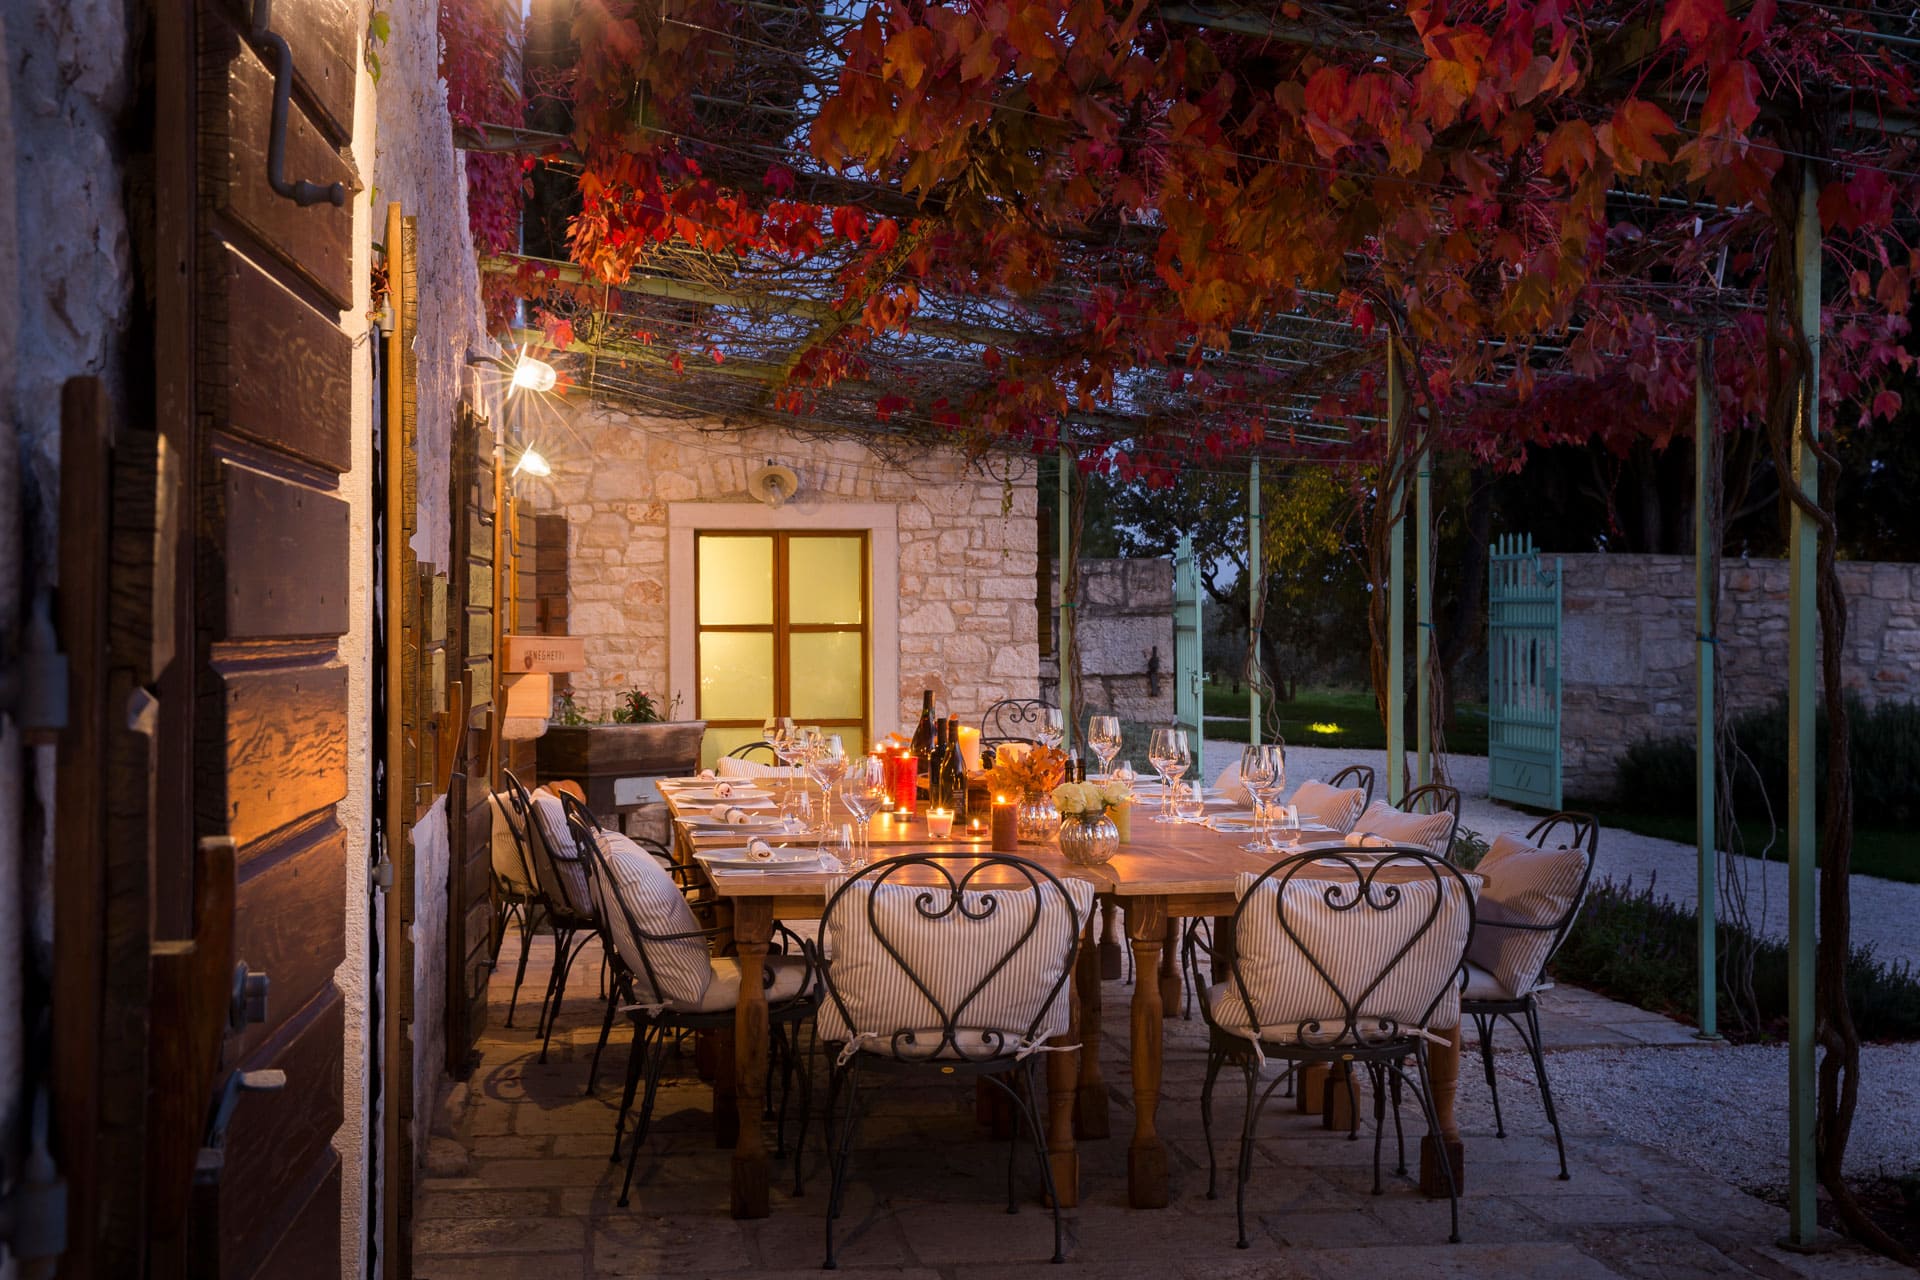 Meneghetti Wine Hotel & Winery - Private terracce